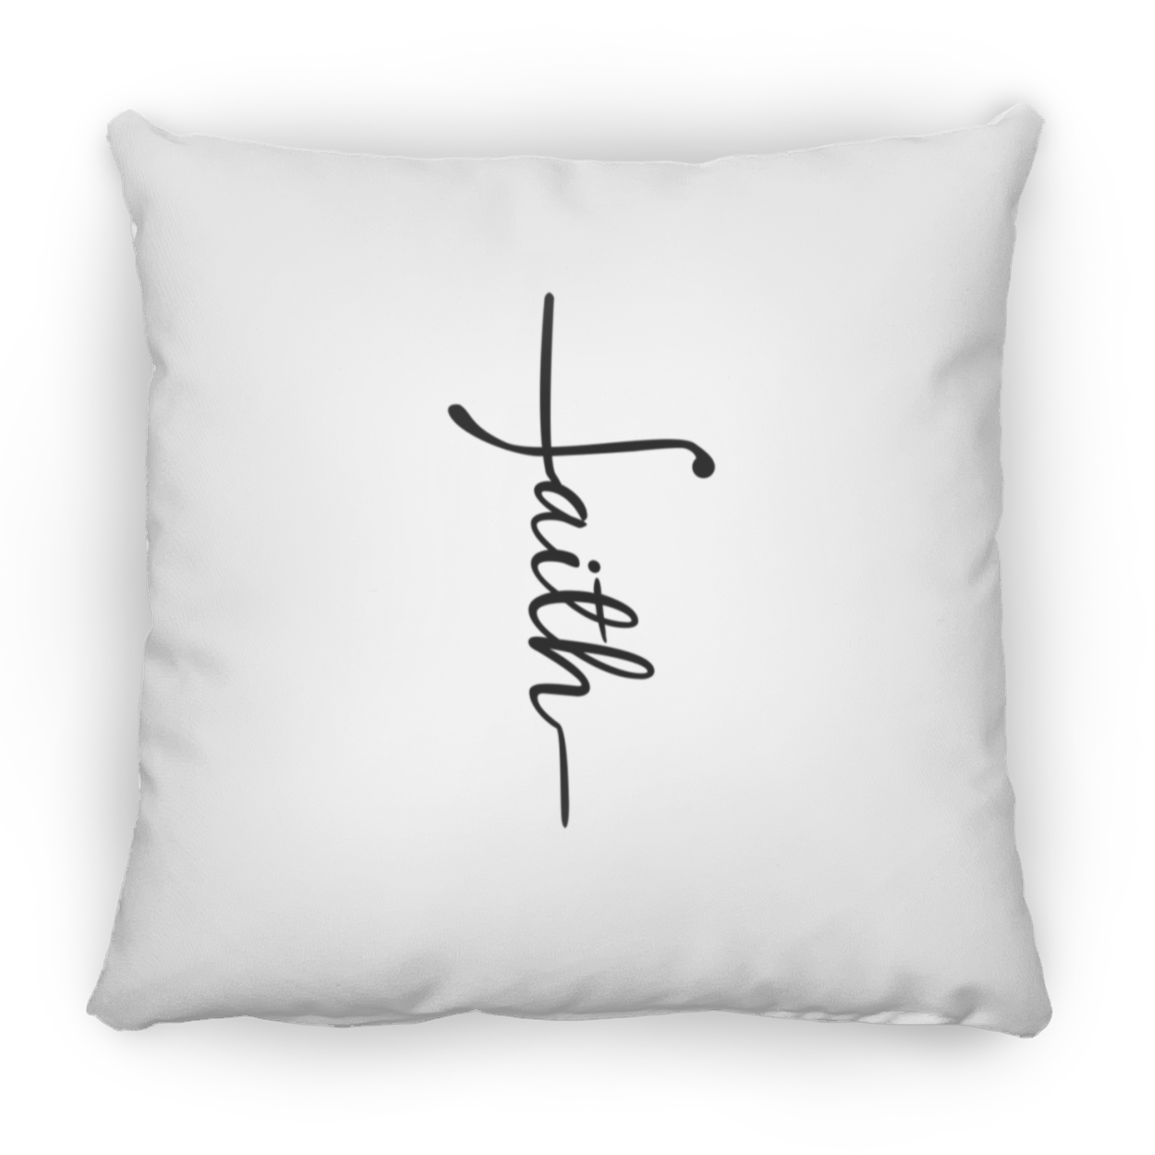 FAITH Pillows